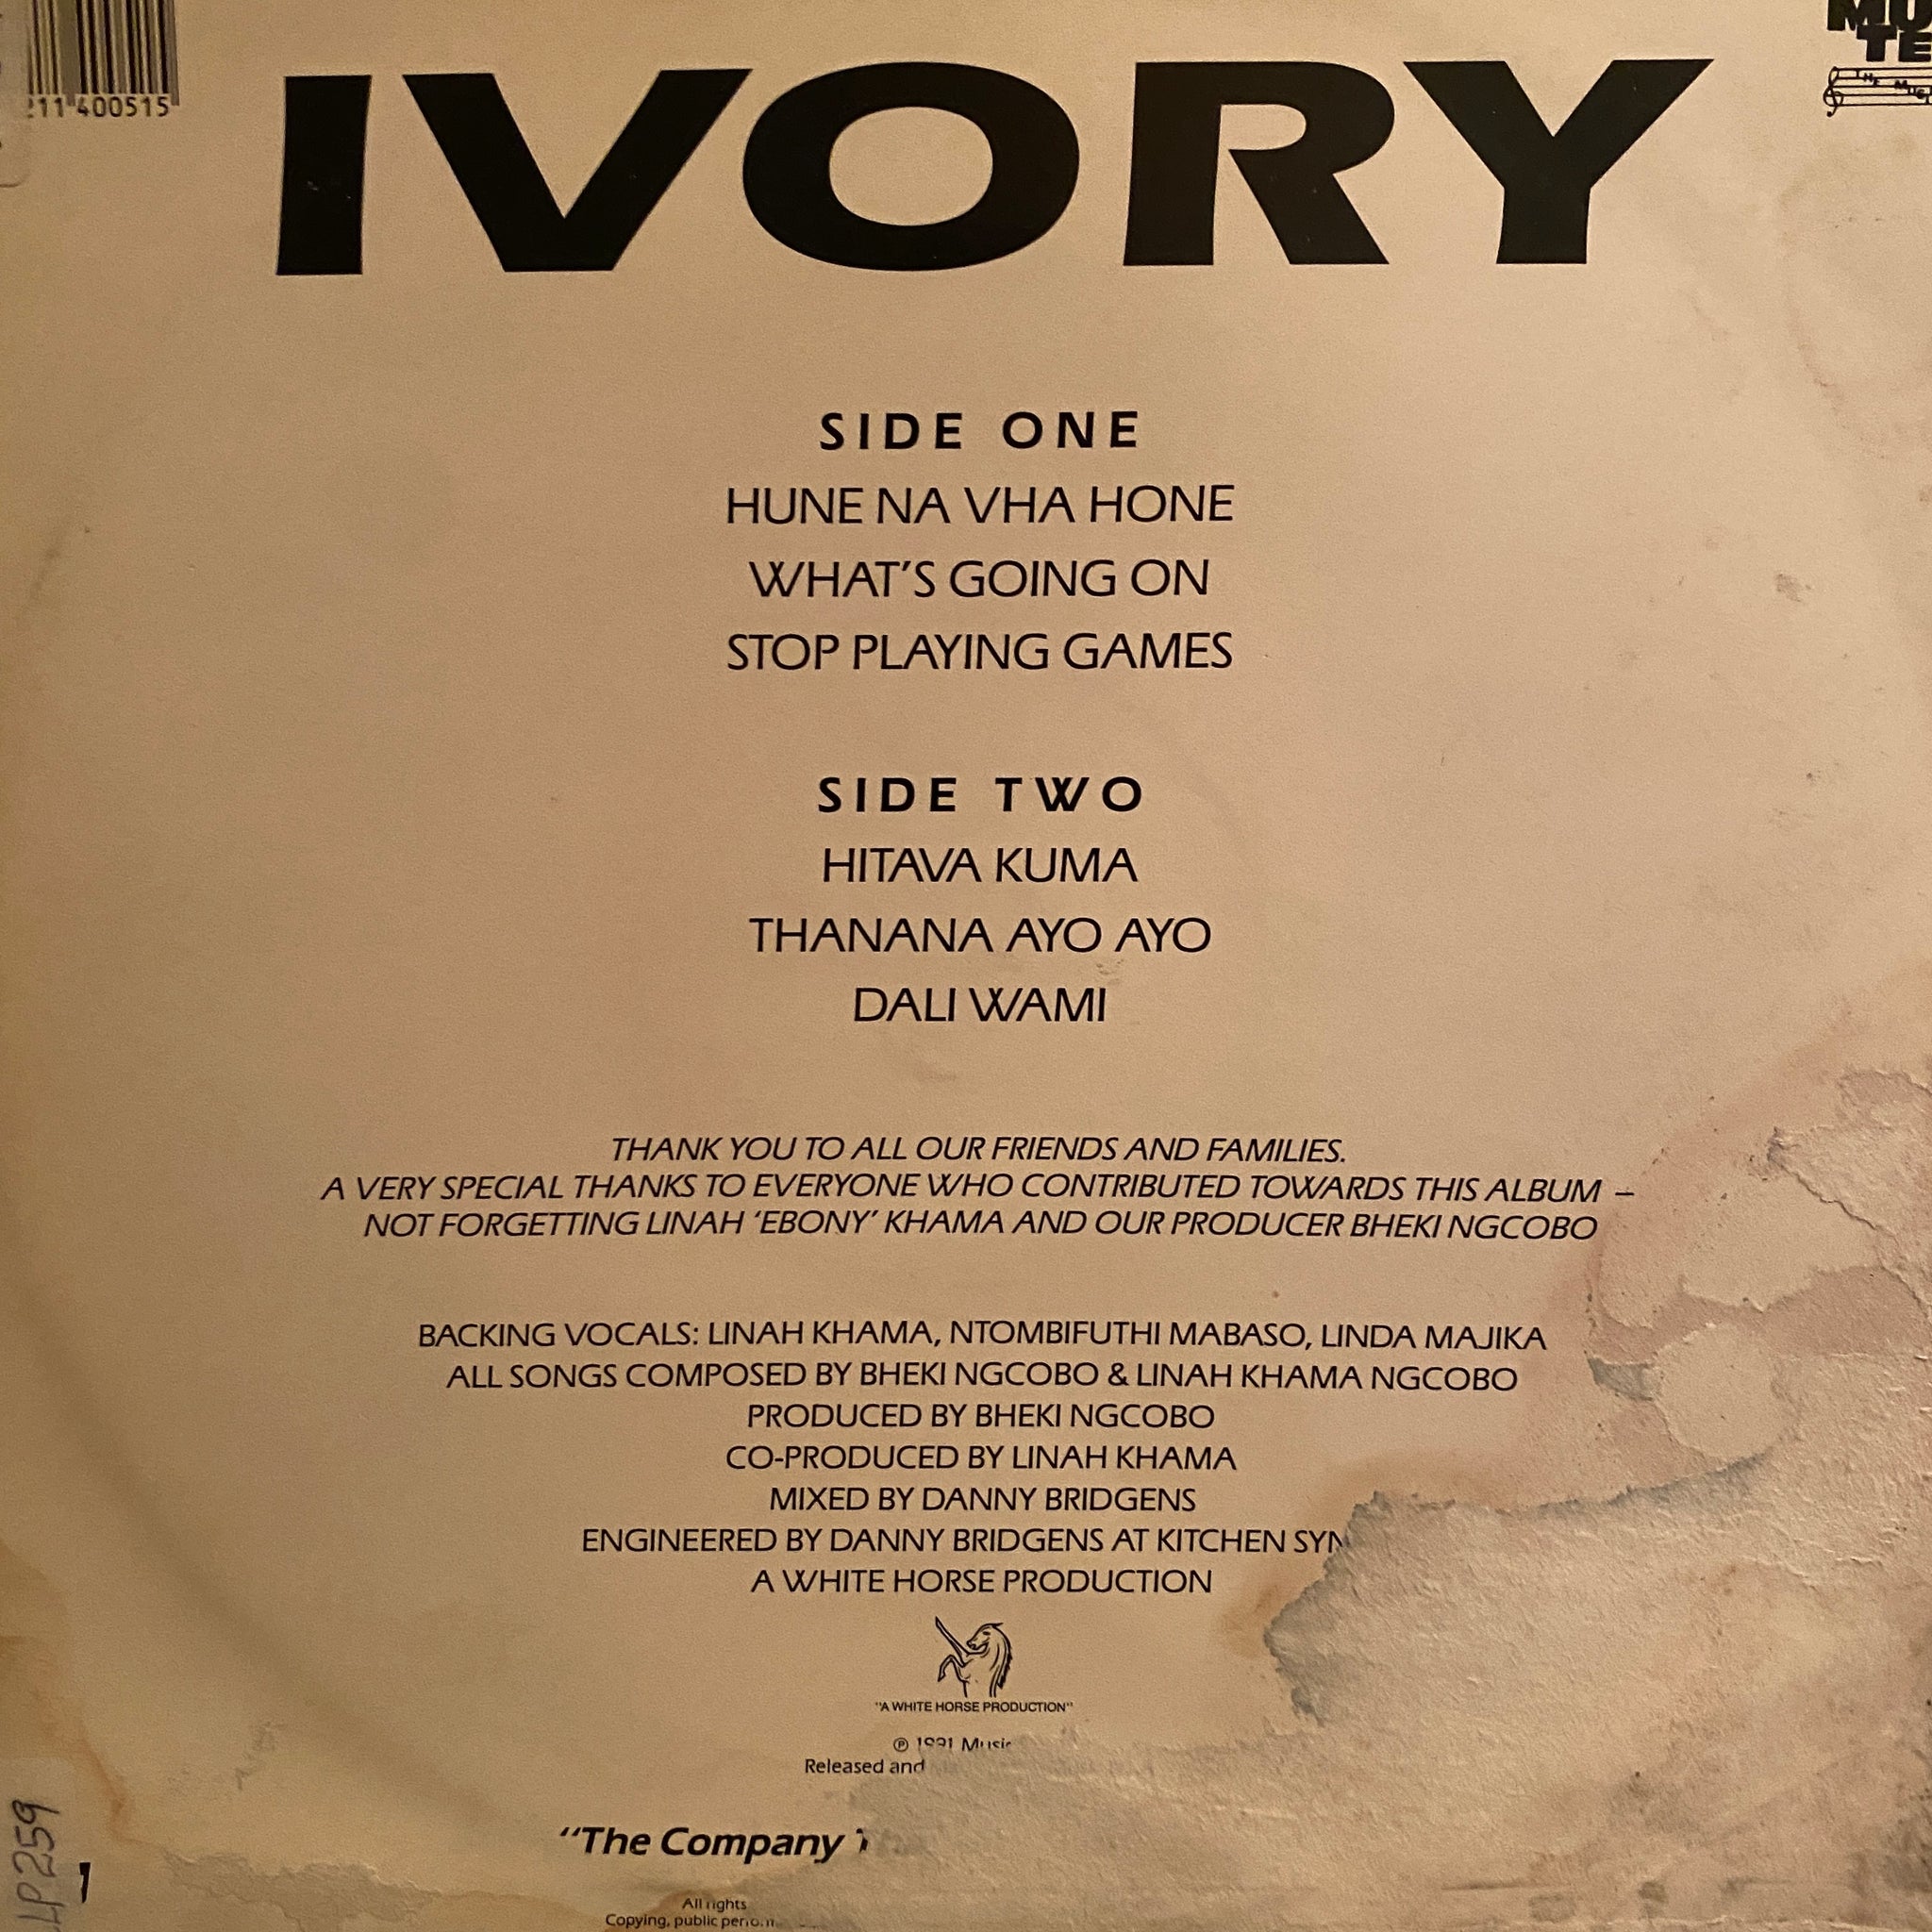 Ivory – Ivory